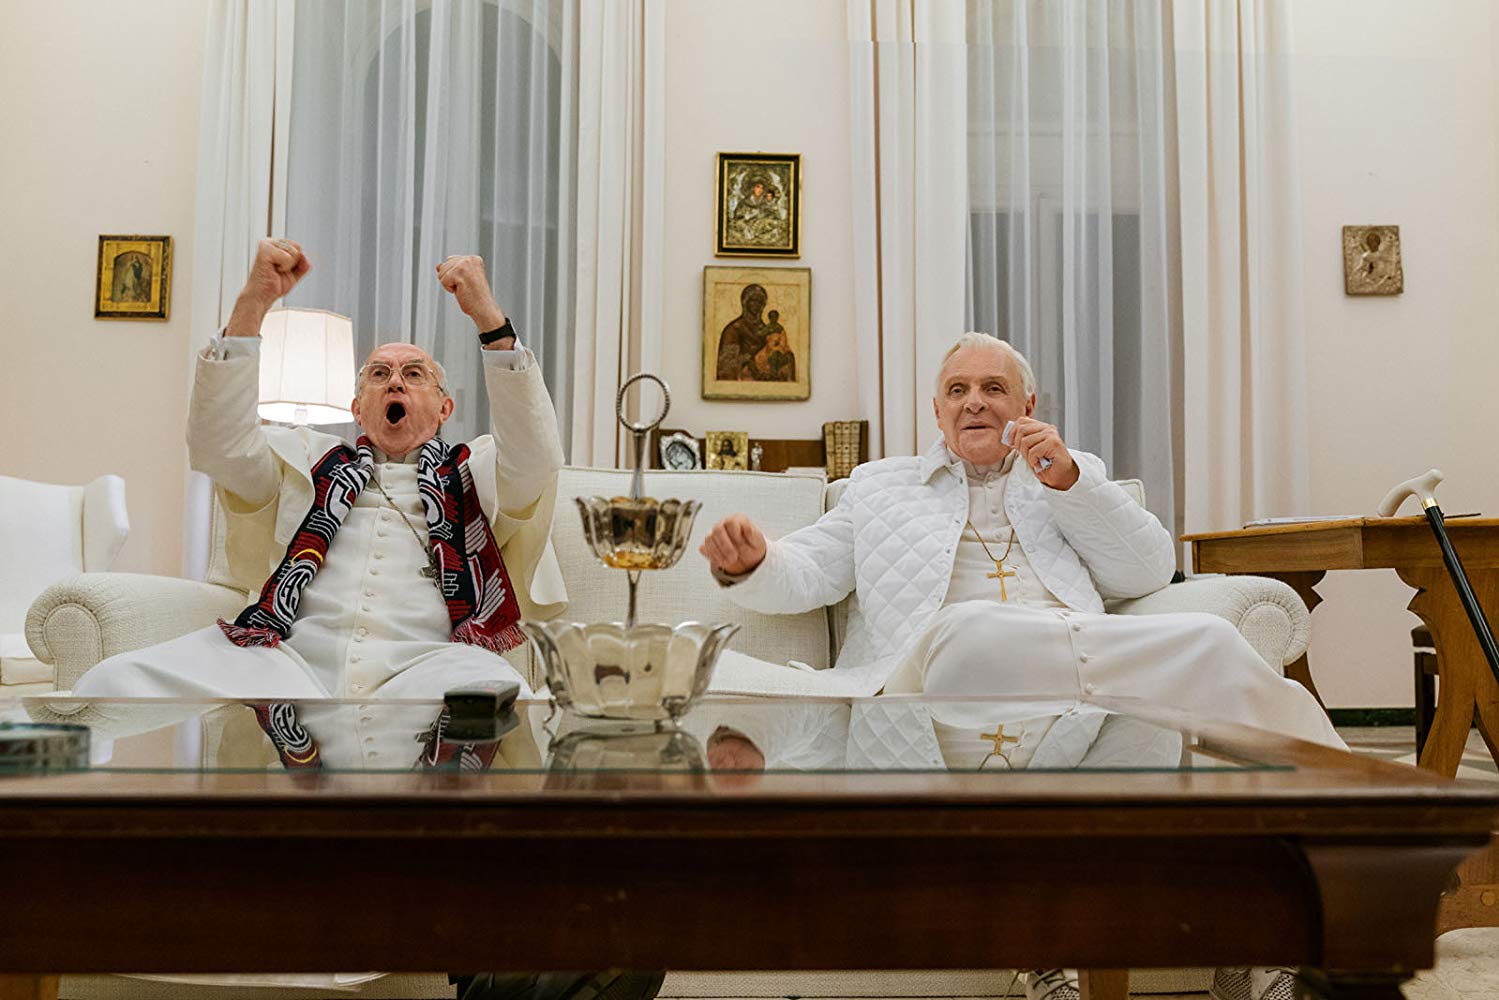 Οι Δύο Πάπες